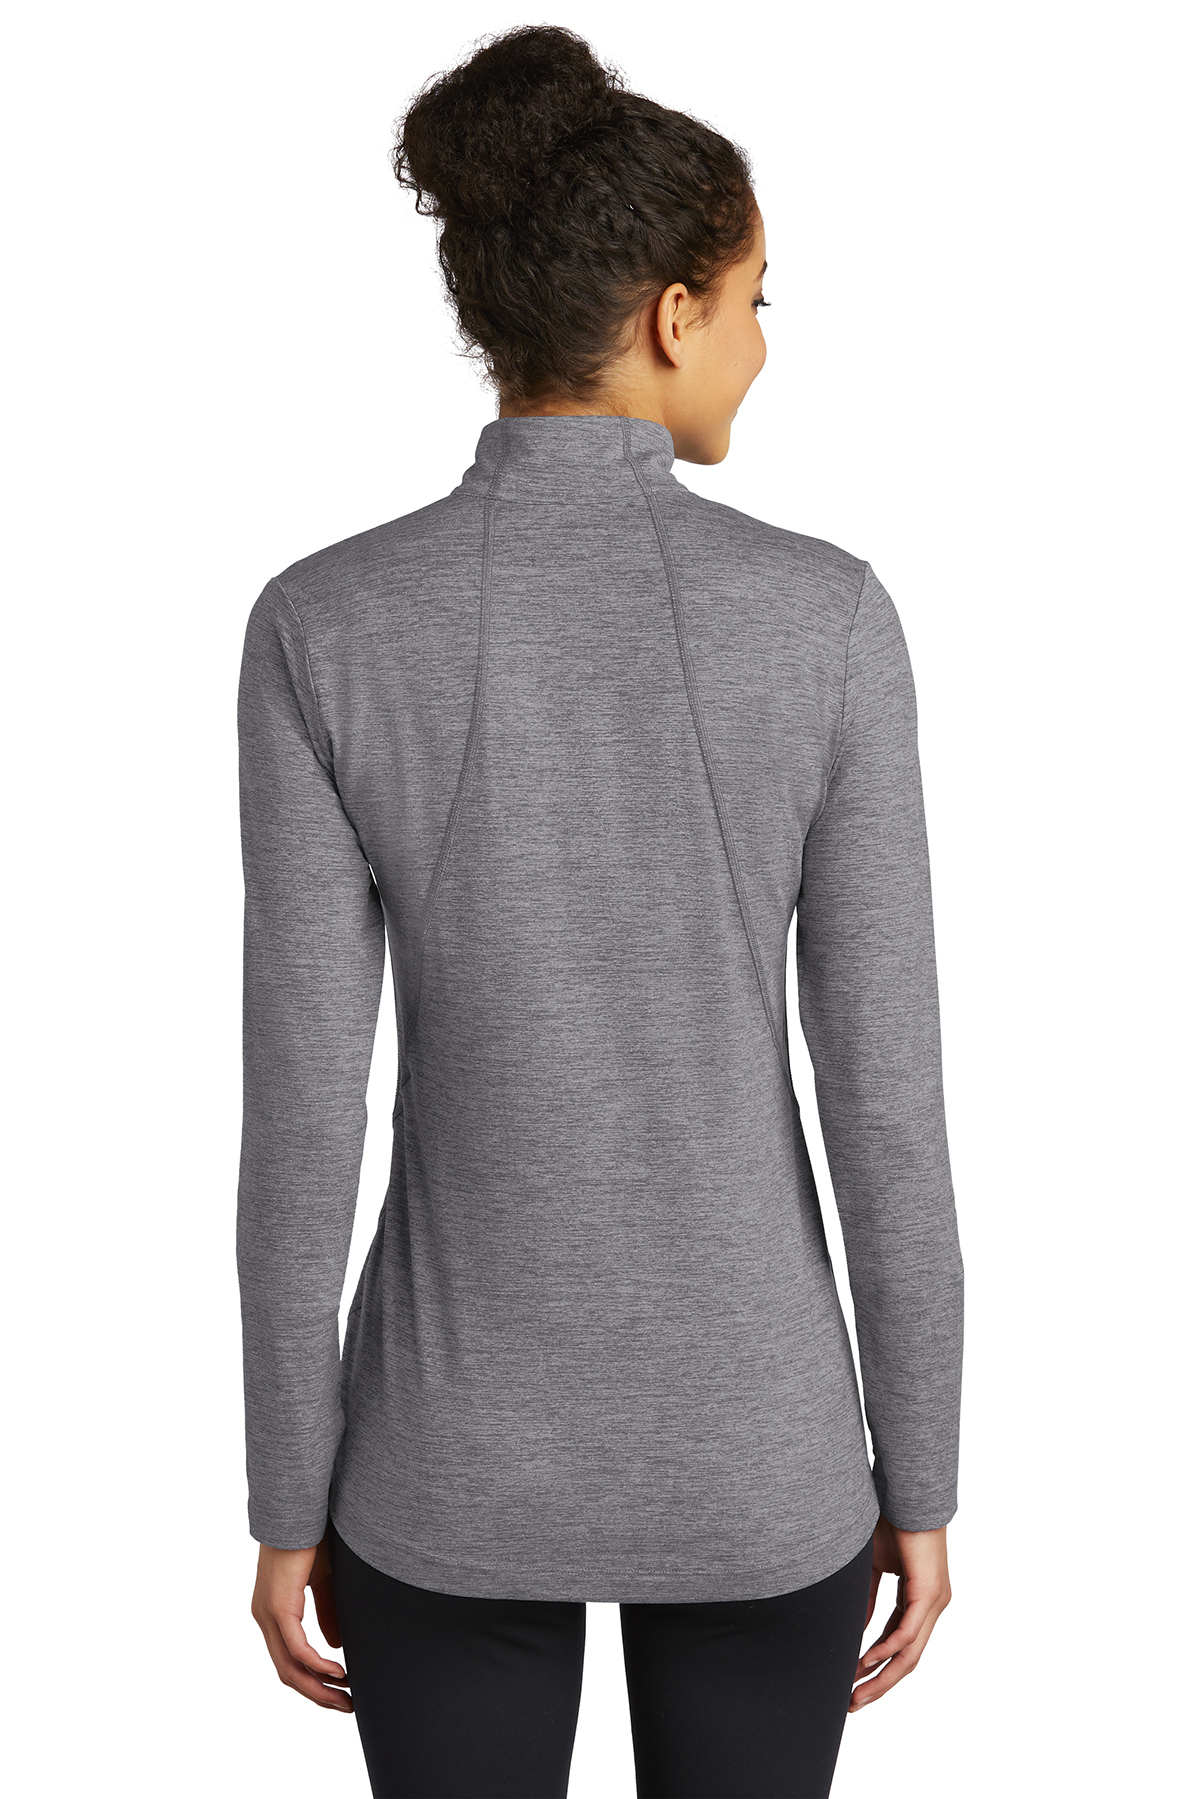 Sport-Tek Ladies Exchange 1.5 Long Sleeve 1/2-Zip | Product | SanMar